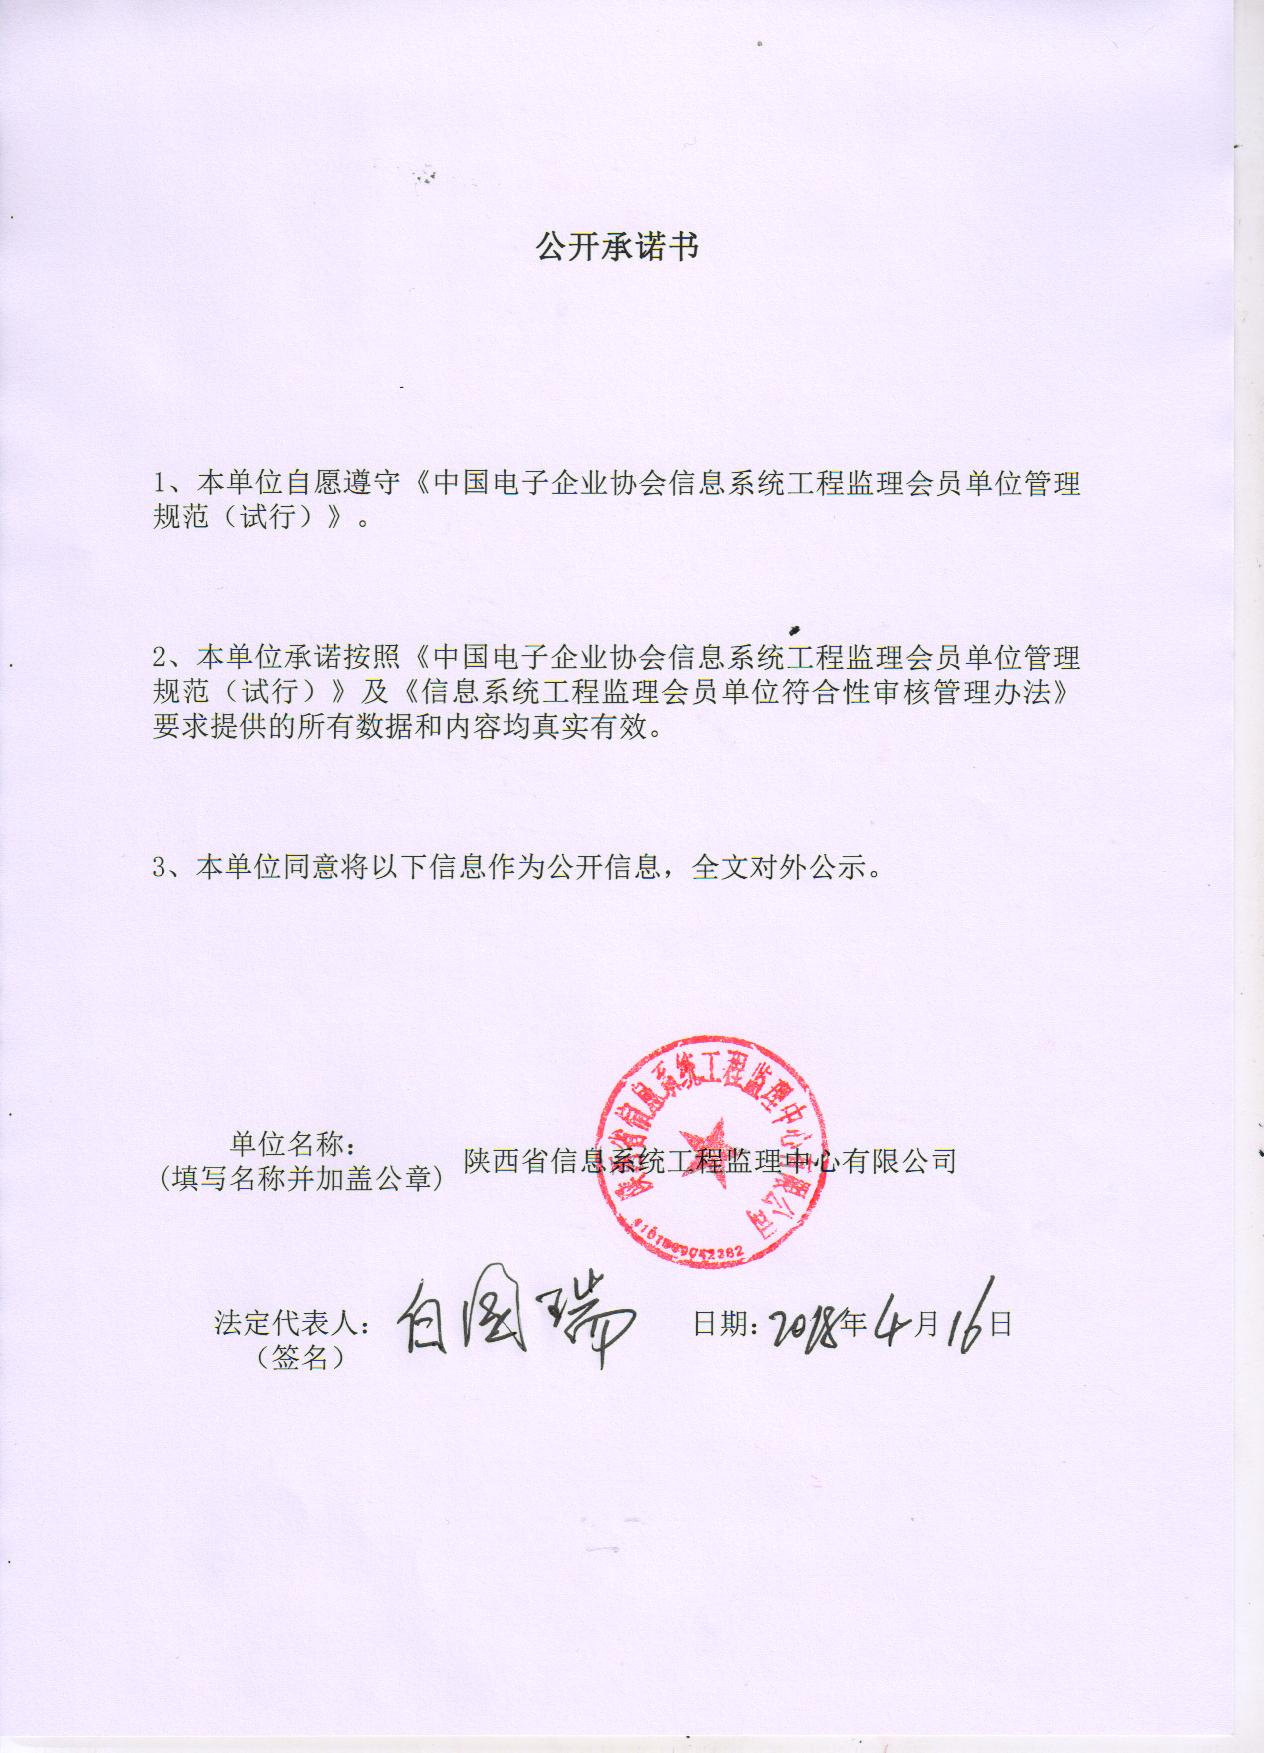 陕西省信息系统工程监理中心有限公司信息系统工程监理资质证书